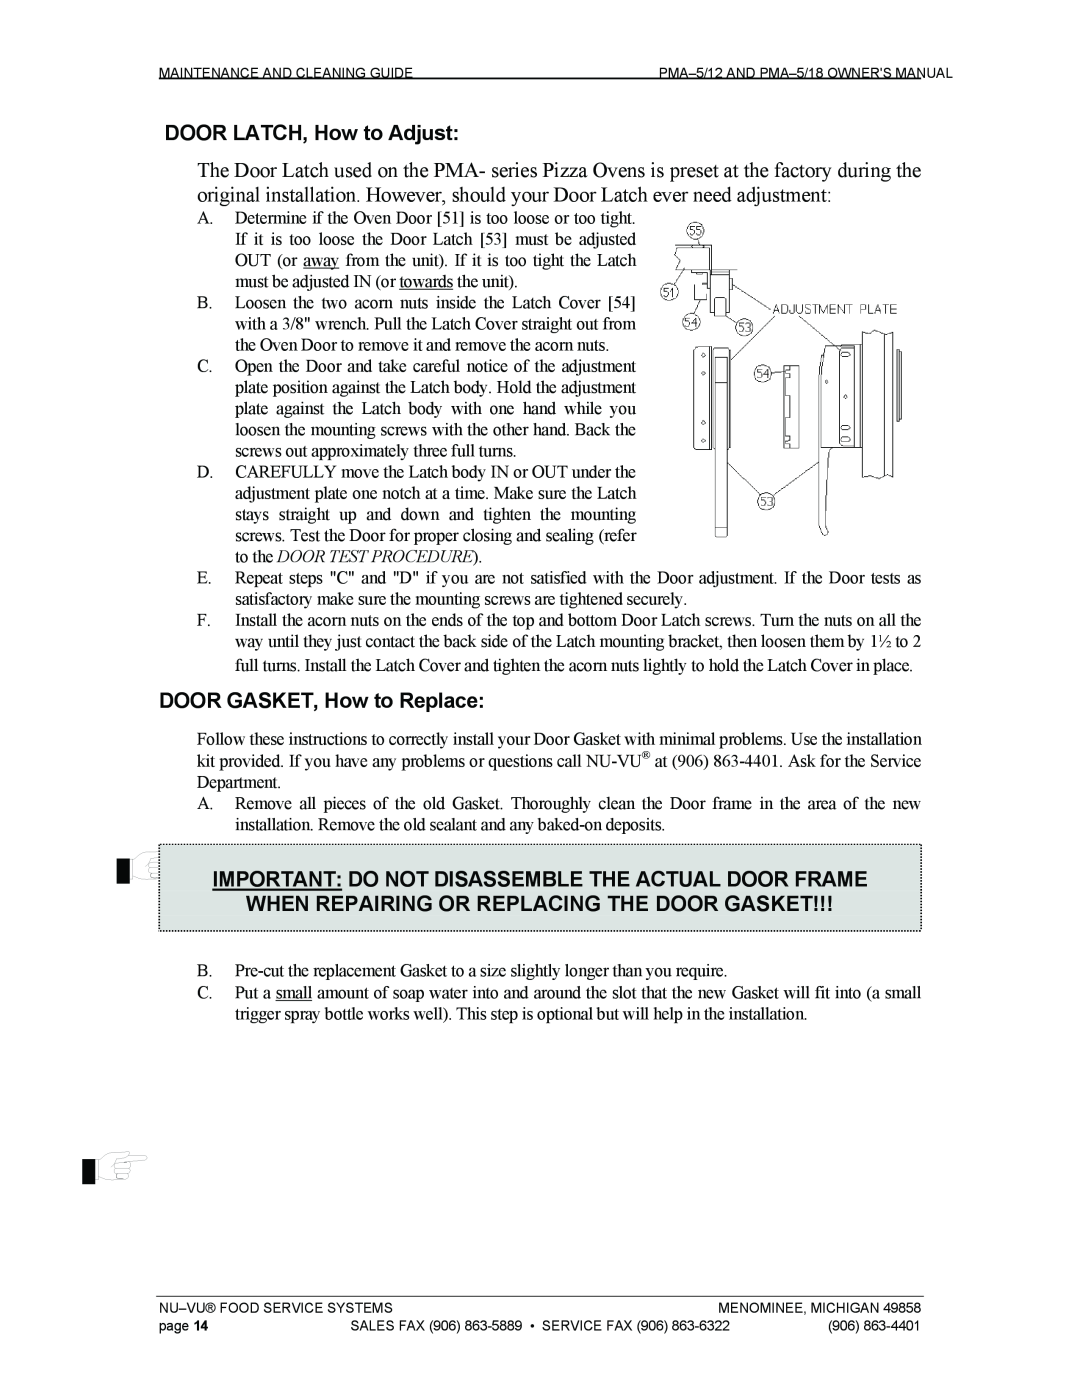 Nu-Vu PMA 5/18 DOOR LATCH, How to Adjust, DOOR GASKET, How to Replace, When Repairing Or Replacing The Door Gasket 